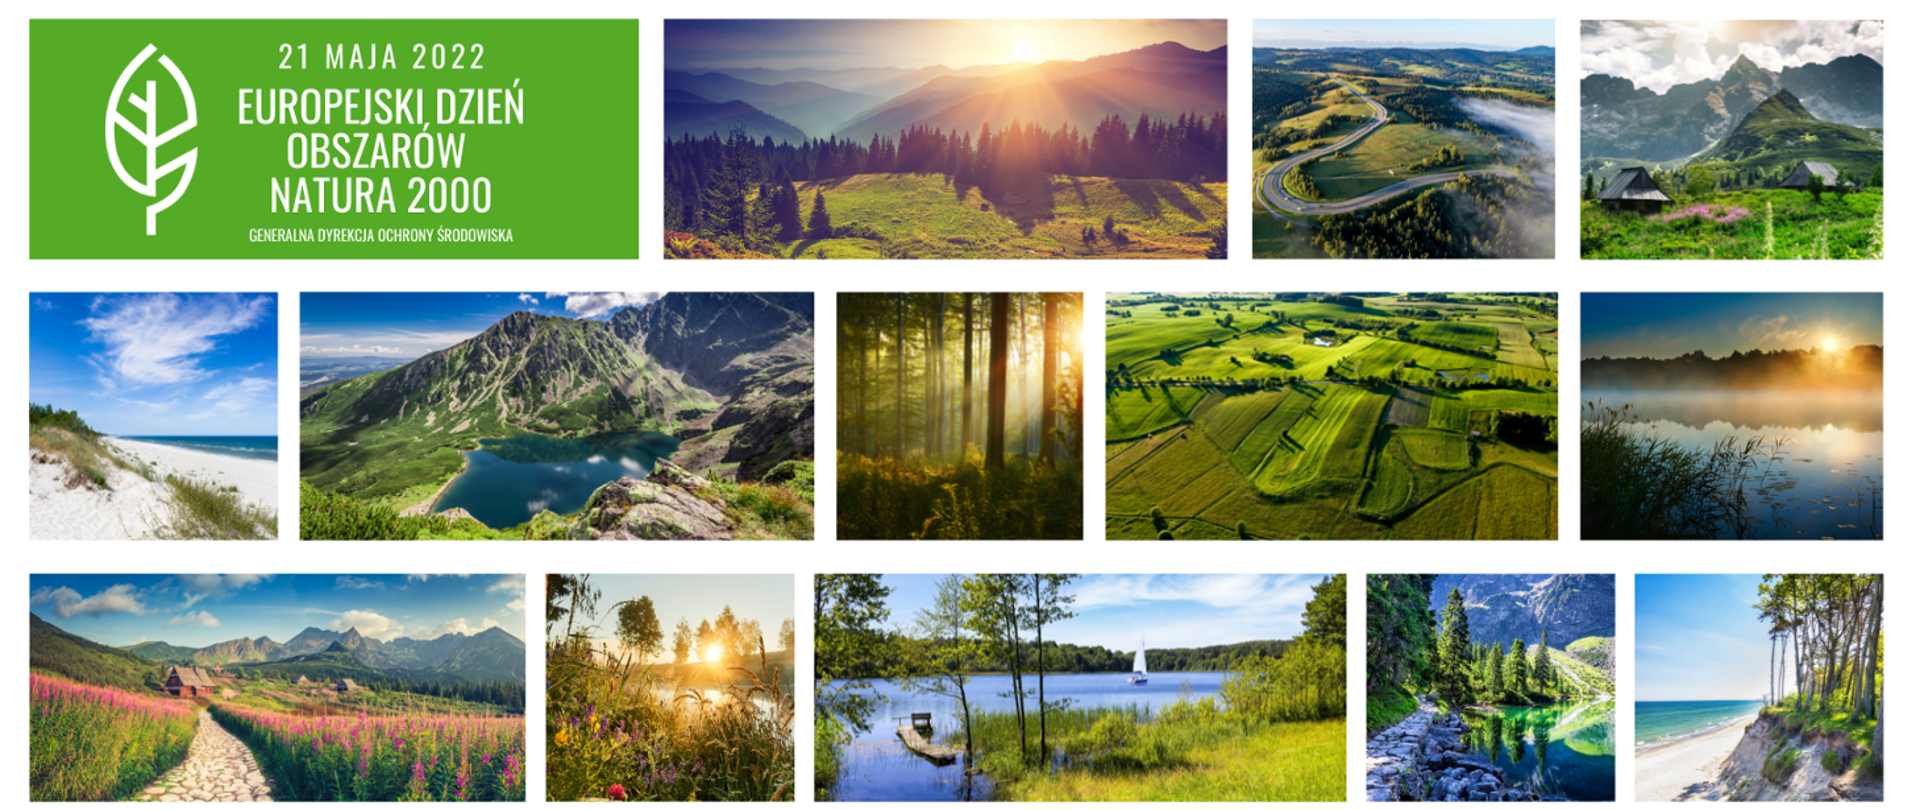 Na białym tle umieszczone w kształcie kwadratów i prostokątów krajobrazy: gór, morza, jezior, łąki, lasy, pola. W sumie 13 kolorowych krajobrazów. W prawym górnym rogu, na zielonym tle, znajduje się napis (biała czcionka): 21 maja 2022 Europejski Dzień Obszarów Natura 2000 oraz logo (biały listek) Generalnej Dyrekcji Ochrony Środowiska.